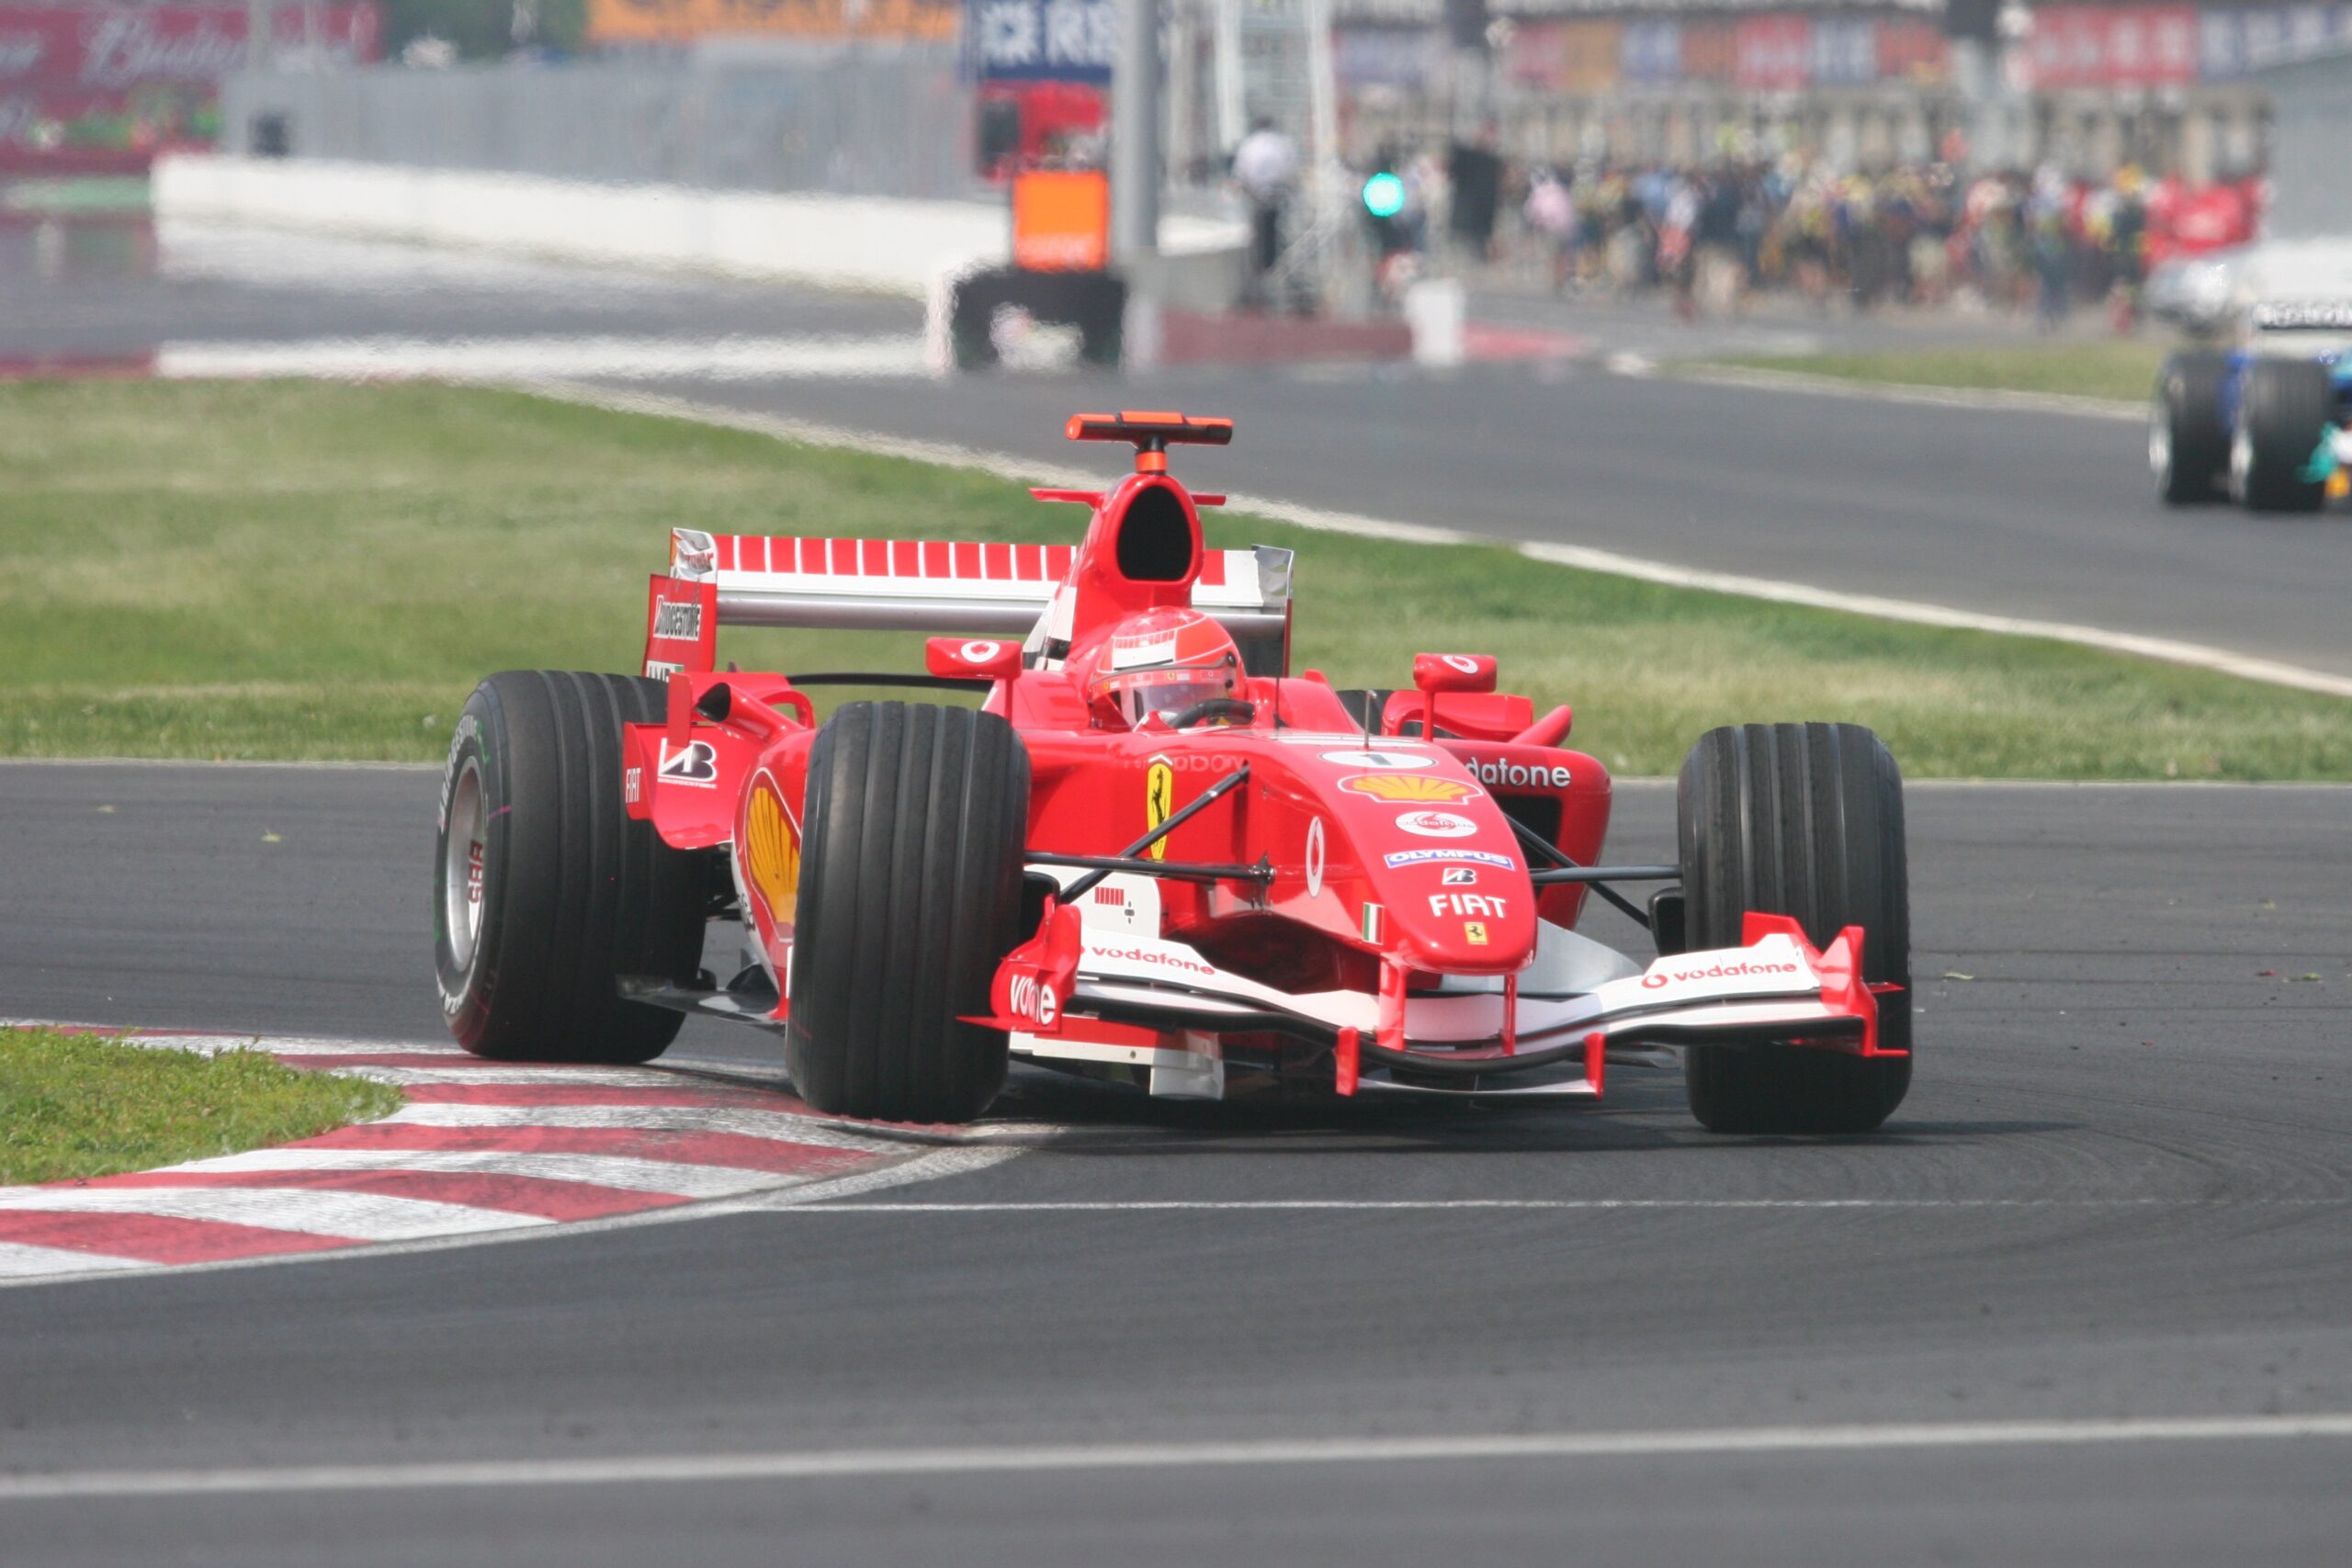 Michael Schumacher měl závodit s Häkkinenem u McLarenu. Dohodu nedodržel